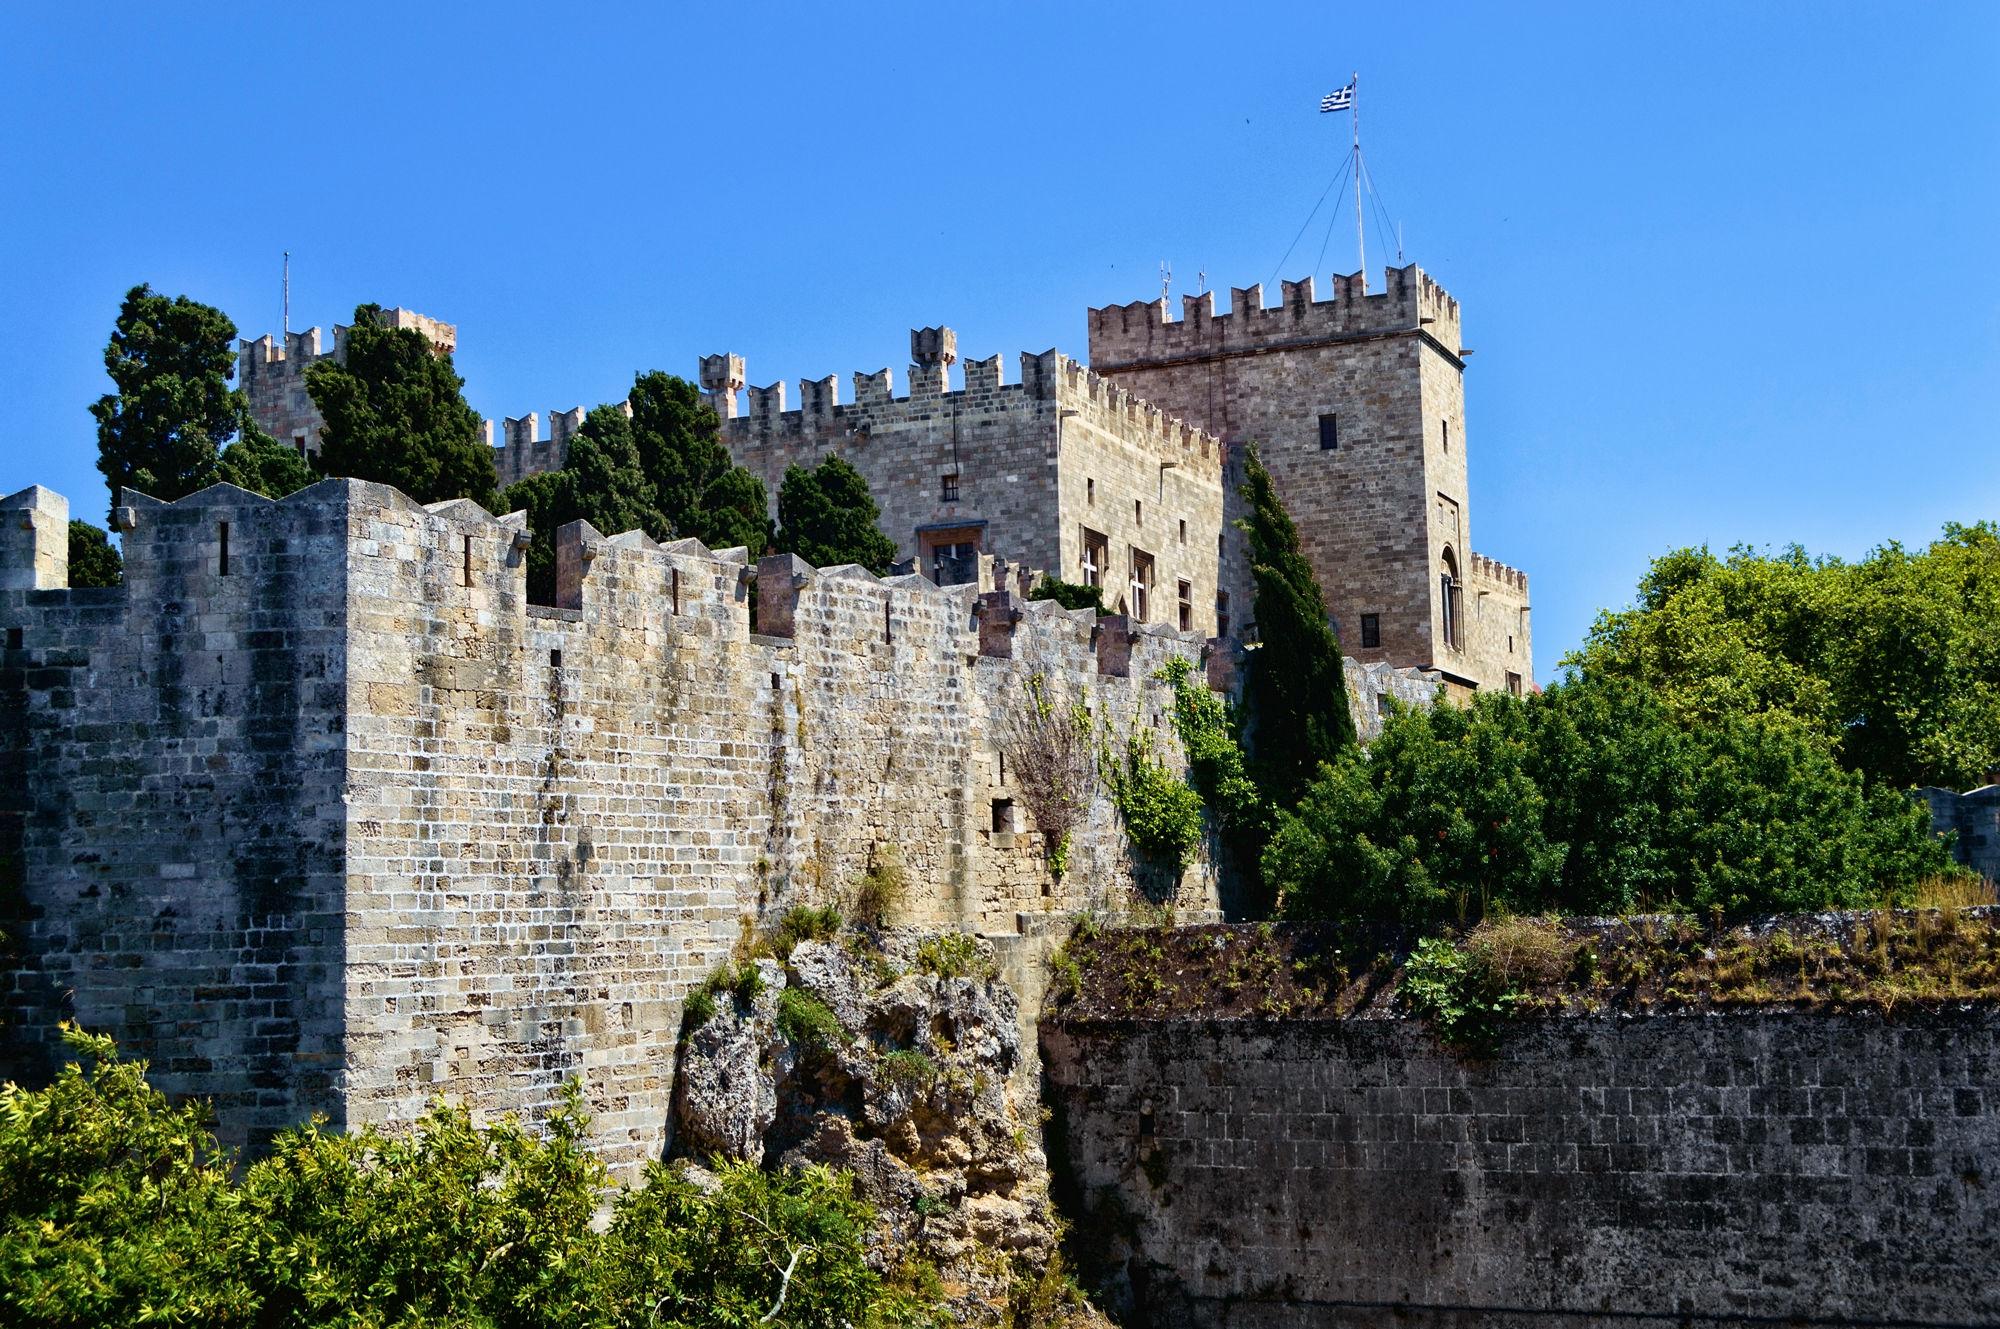 Родосская крепость представляет собой мощное сооружение, ведь до наших дней сохранилось большинство стен, бастионы, улицы, и даже дворец магистра не претерпел значительных изменений.